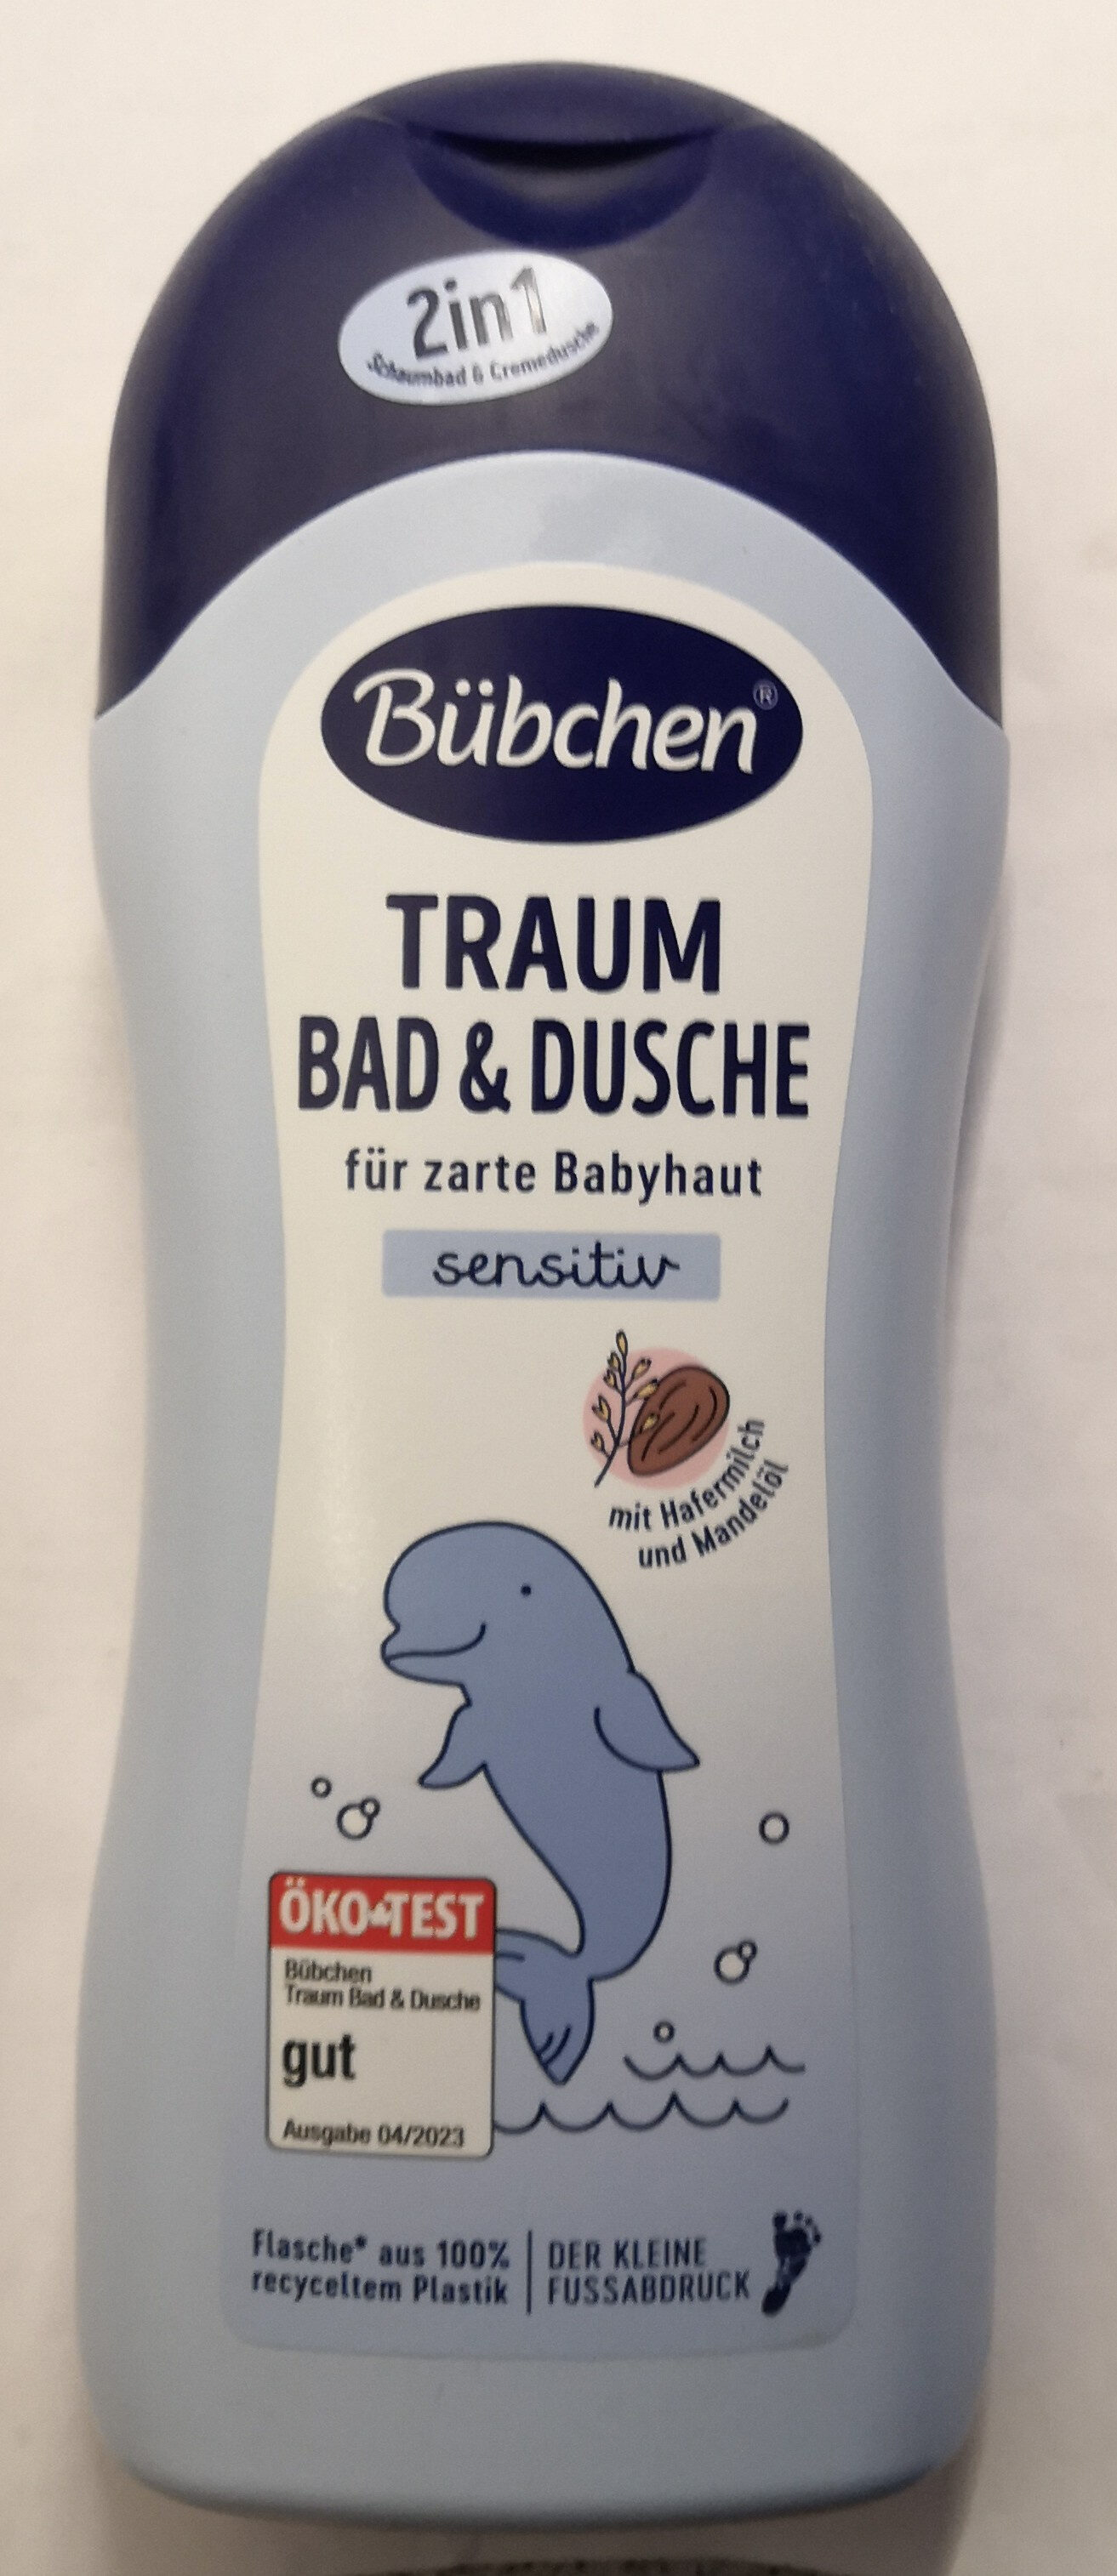 Traum sensitiv Bad & Dusche - Produkt - de